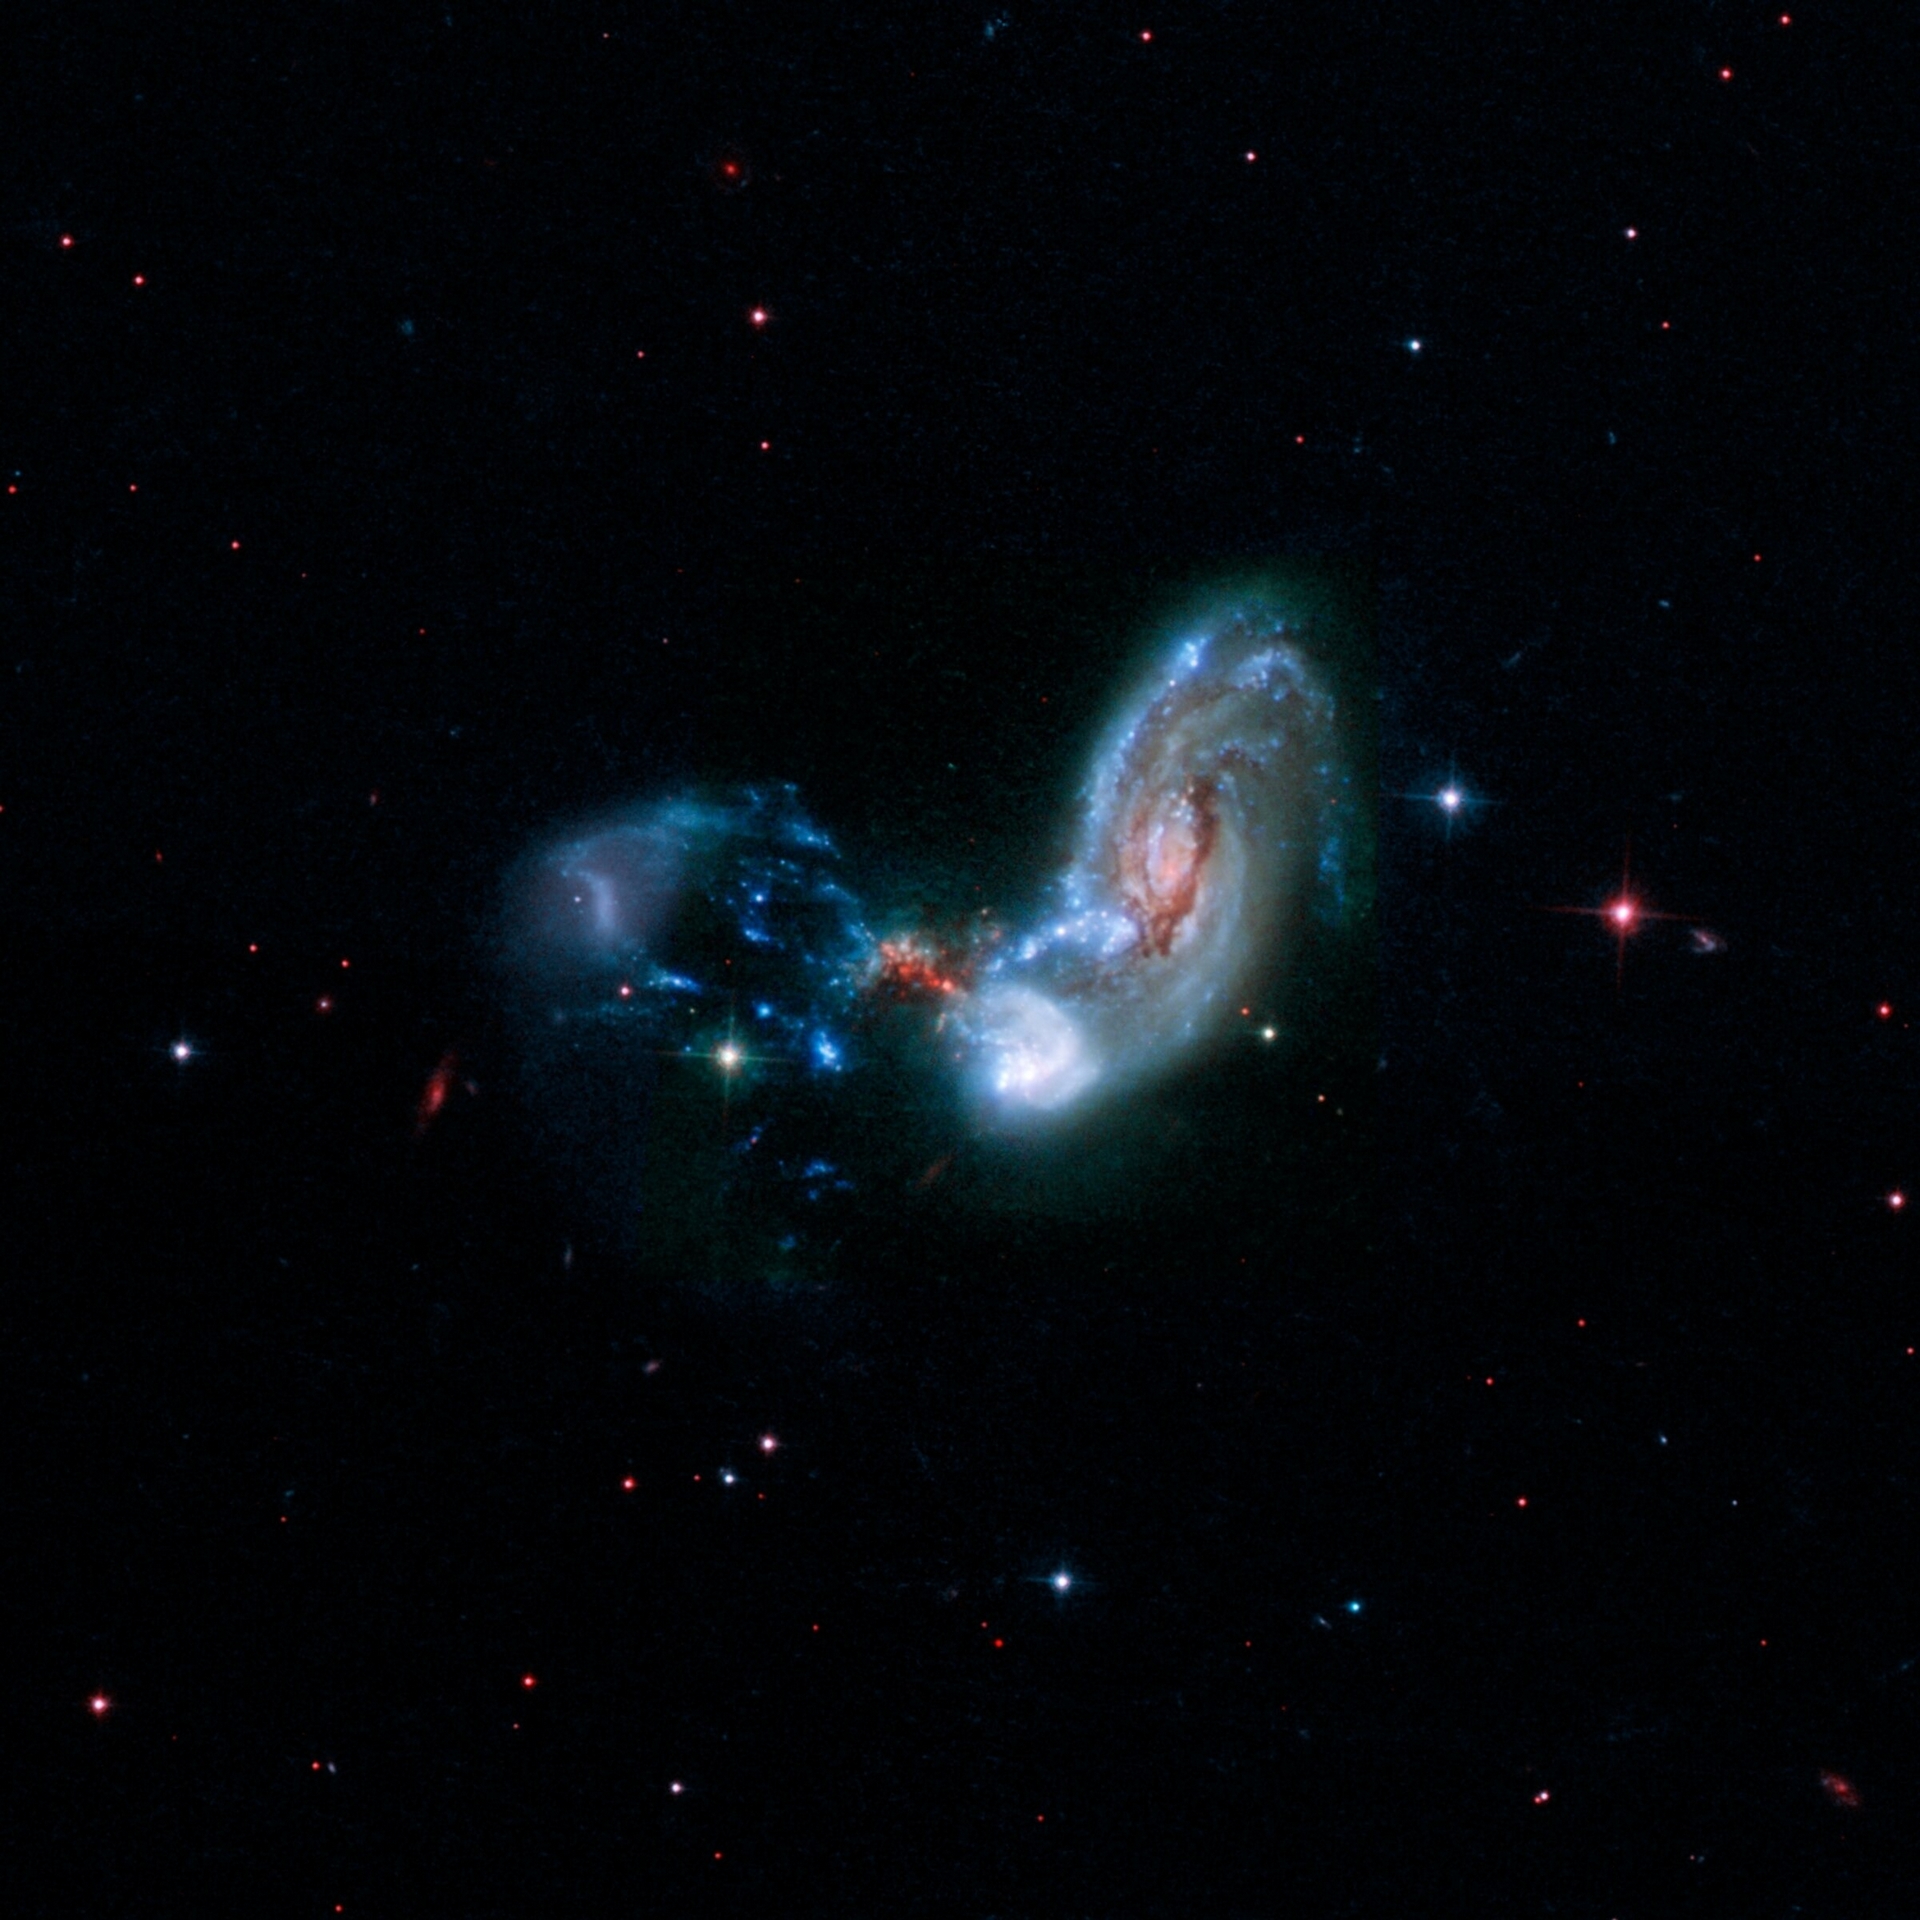 合併星系可能呈現許多令人著迷的形狀。這些合併星係稱為II Zw 096，影像中央附近的紅色斑點暗示此處是壯觀的恆星形成遽增位置。PHOTOGRAPH BY NASA, CALTECH, H. INAMI (HIROSHIMA UNIVERSITY) 